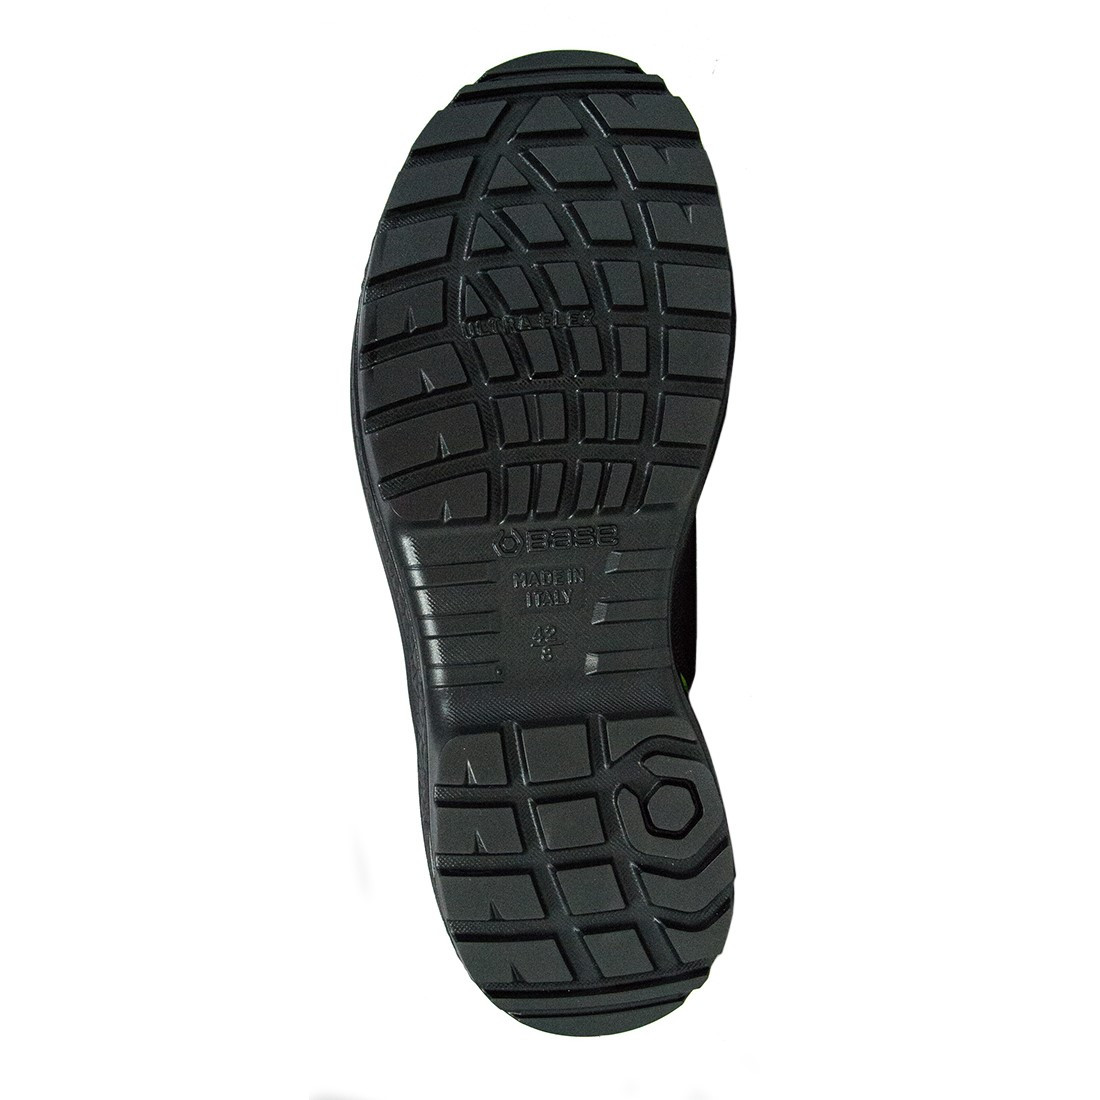 Pantofi Be-Fit S1P SRC - Incaltaminte de protectie | Bocanci, Pantofi, Sandale, Cizme